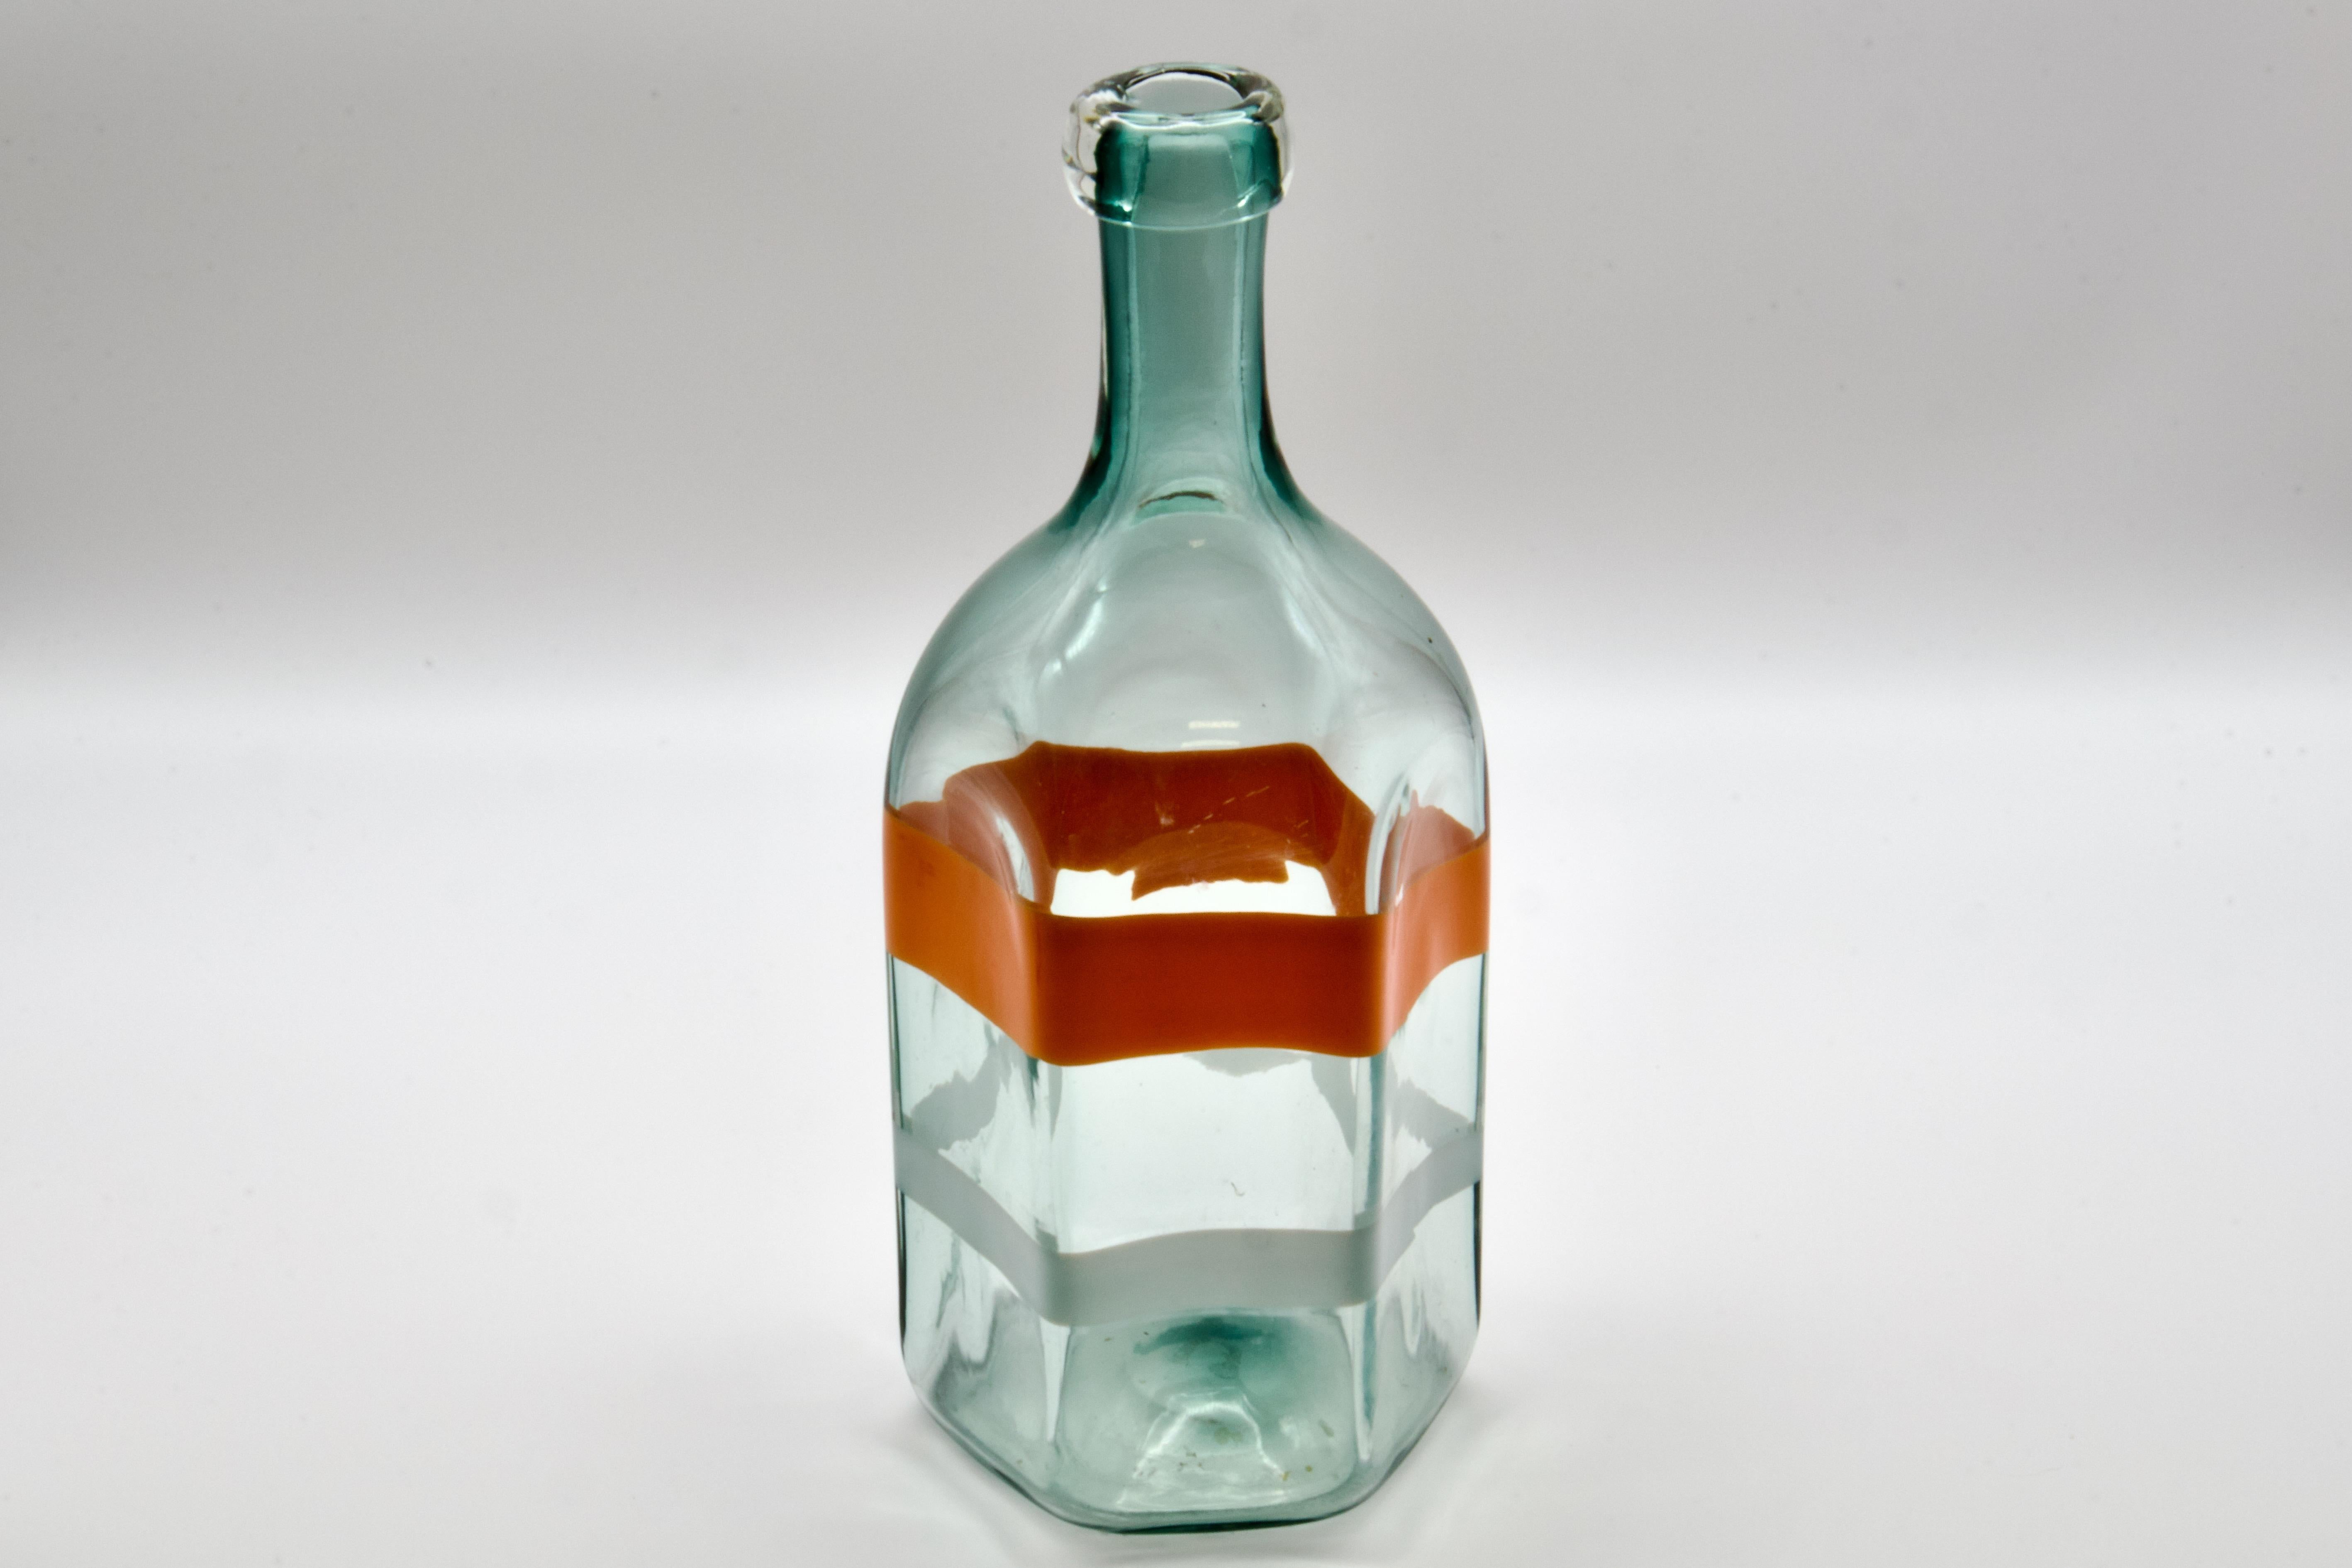 Exquis vase en verre d'art de Murano soufflé à la main dans un grand format de bouteille. Convient aussi bien comme objet décoratif que comme carafe d'eau fonctionnelle et de niveau supérieur. Fabriqué par La murrina en Italie dans les années